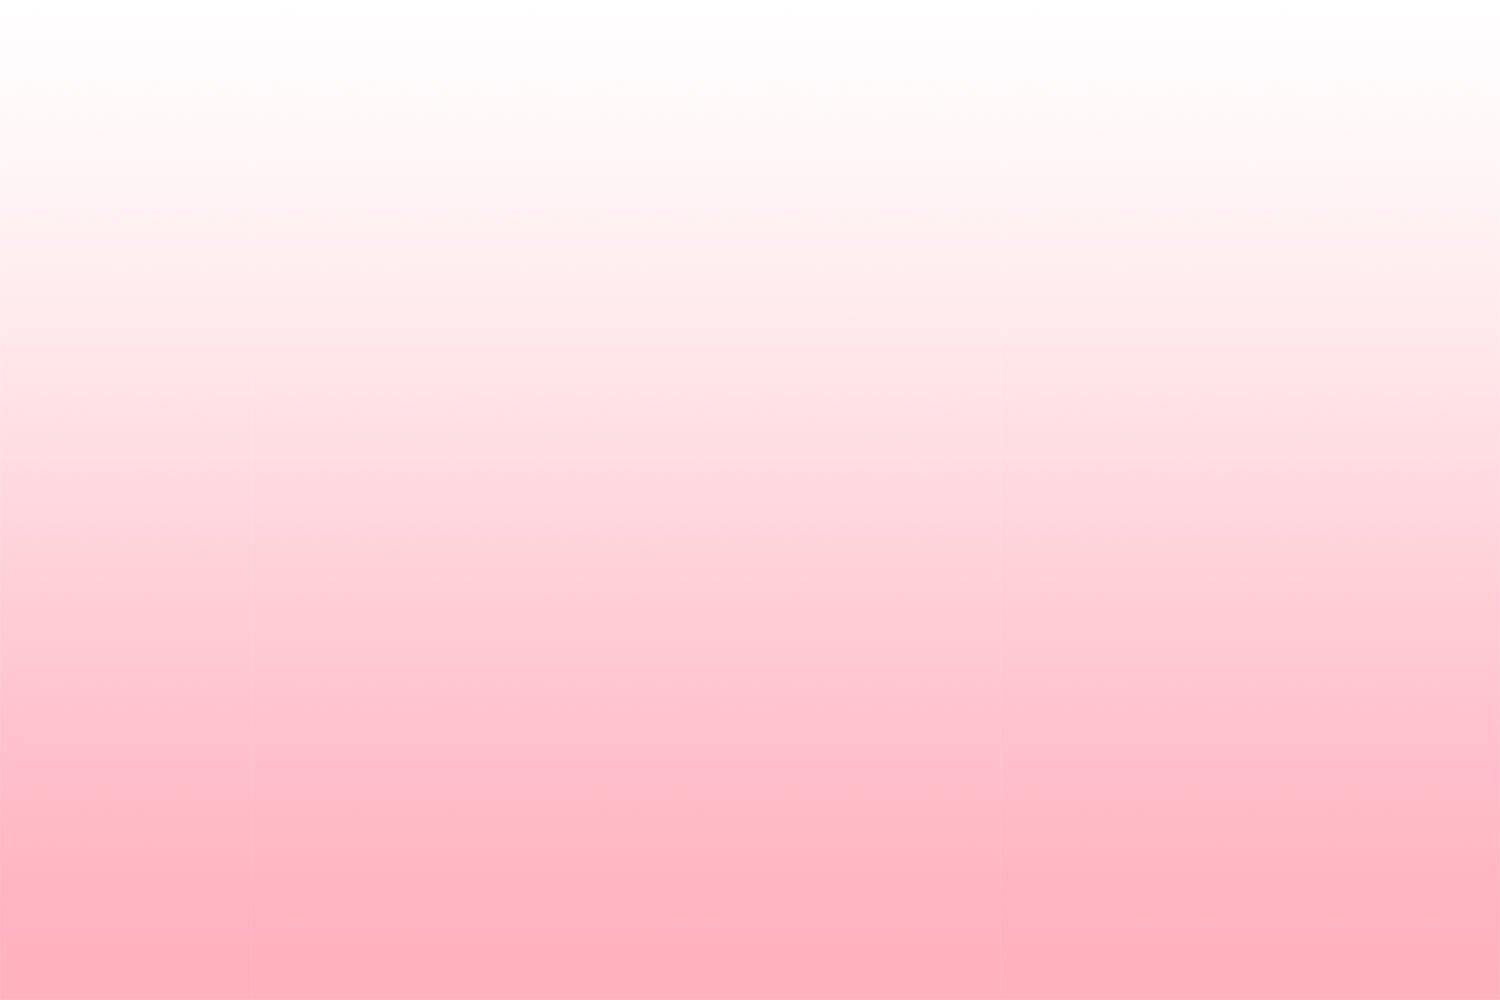 Bạn mong muốn được tìm kiếm một hình nền màu hồng ombre chuẩn và miễn phí? Hãy để chúng tôi giúp bạn đến với một bộ sưu tập hình nền màu hồng ombre miễn phí và đa dạng nhất. Chắc chắn rằng bạn sẽ tìm thấy cho mình một mẫu hình nền đẹp và phù hợp với sở thích cá tính của bạn.